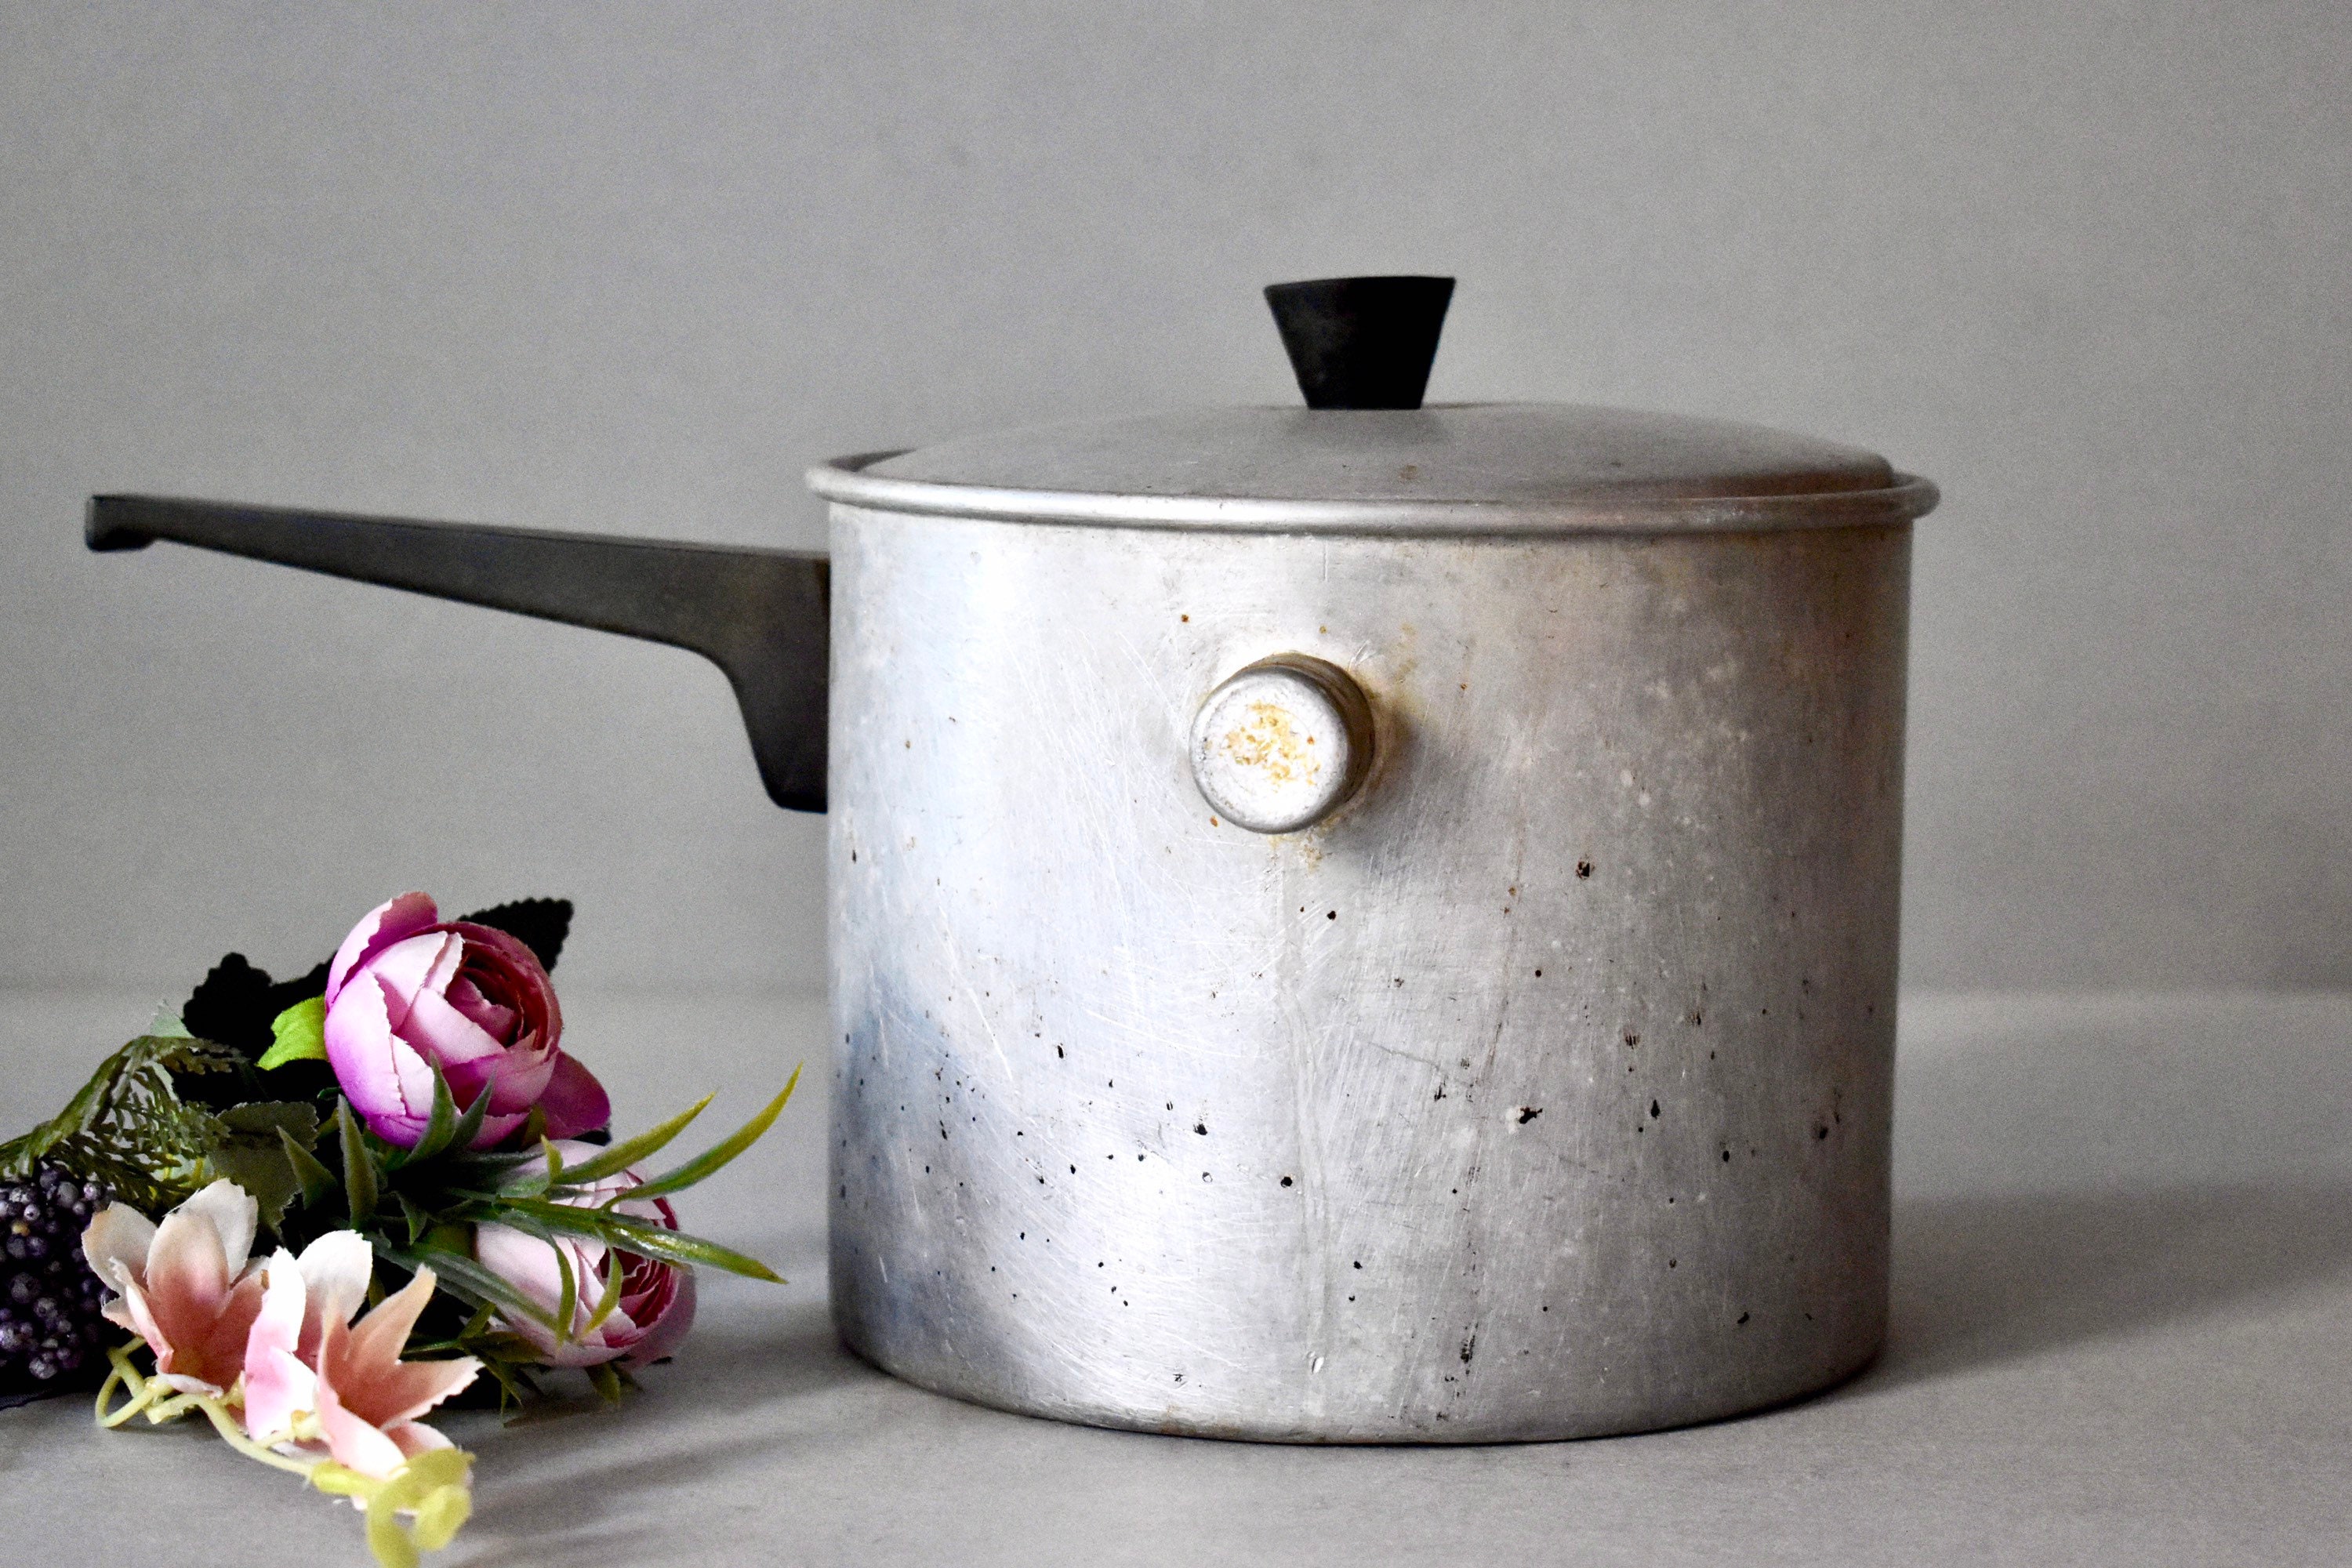 Vintage Metal Pot with Pouring Spout – Golden Oldies Antiques